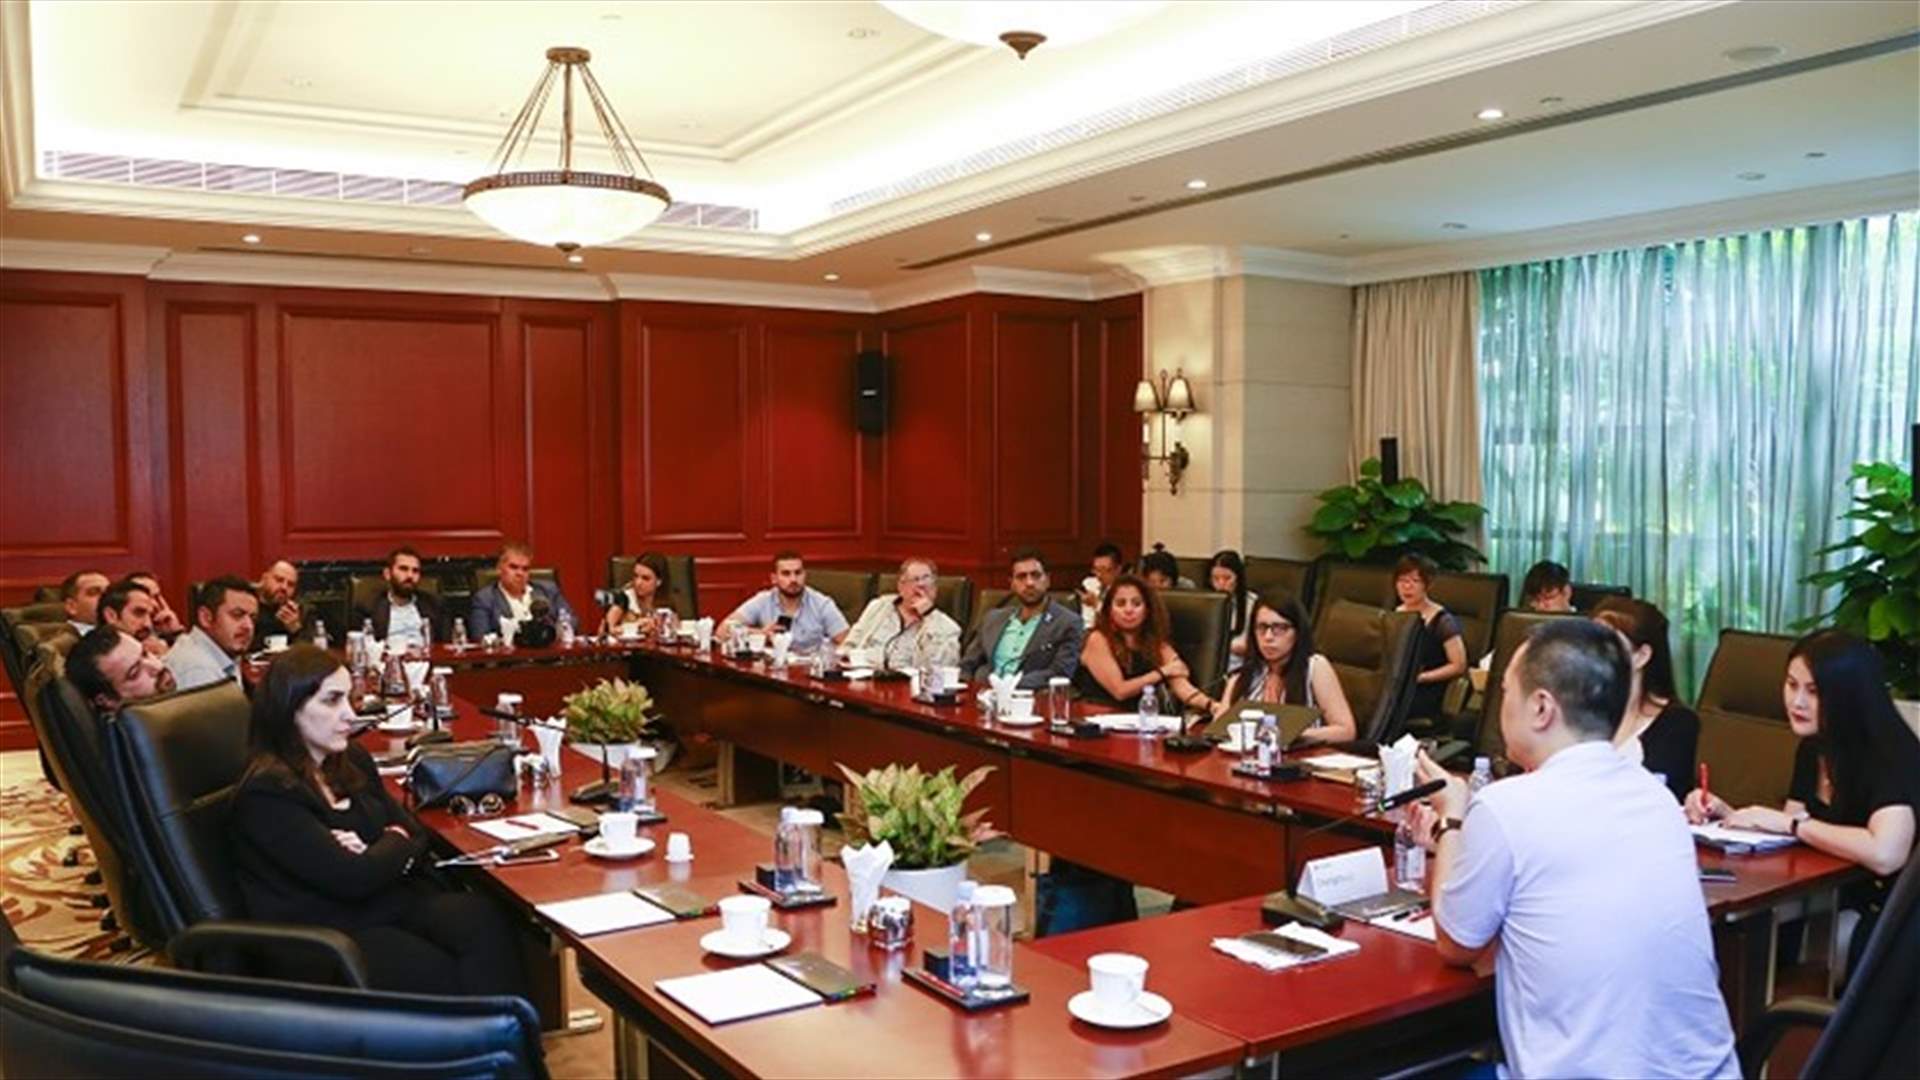 جولة لإعلاميين من لبنان والأردن في المقرّ الرئيسي لهواوي في الصين